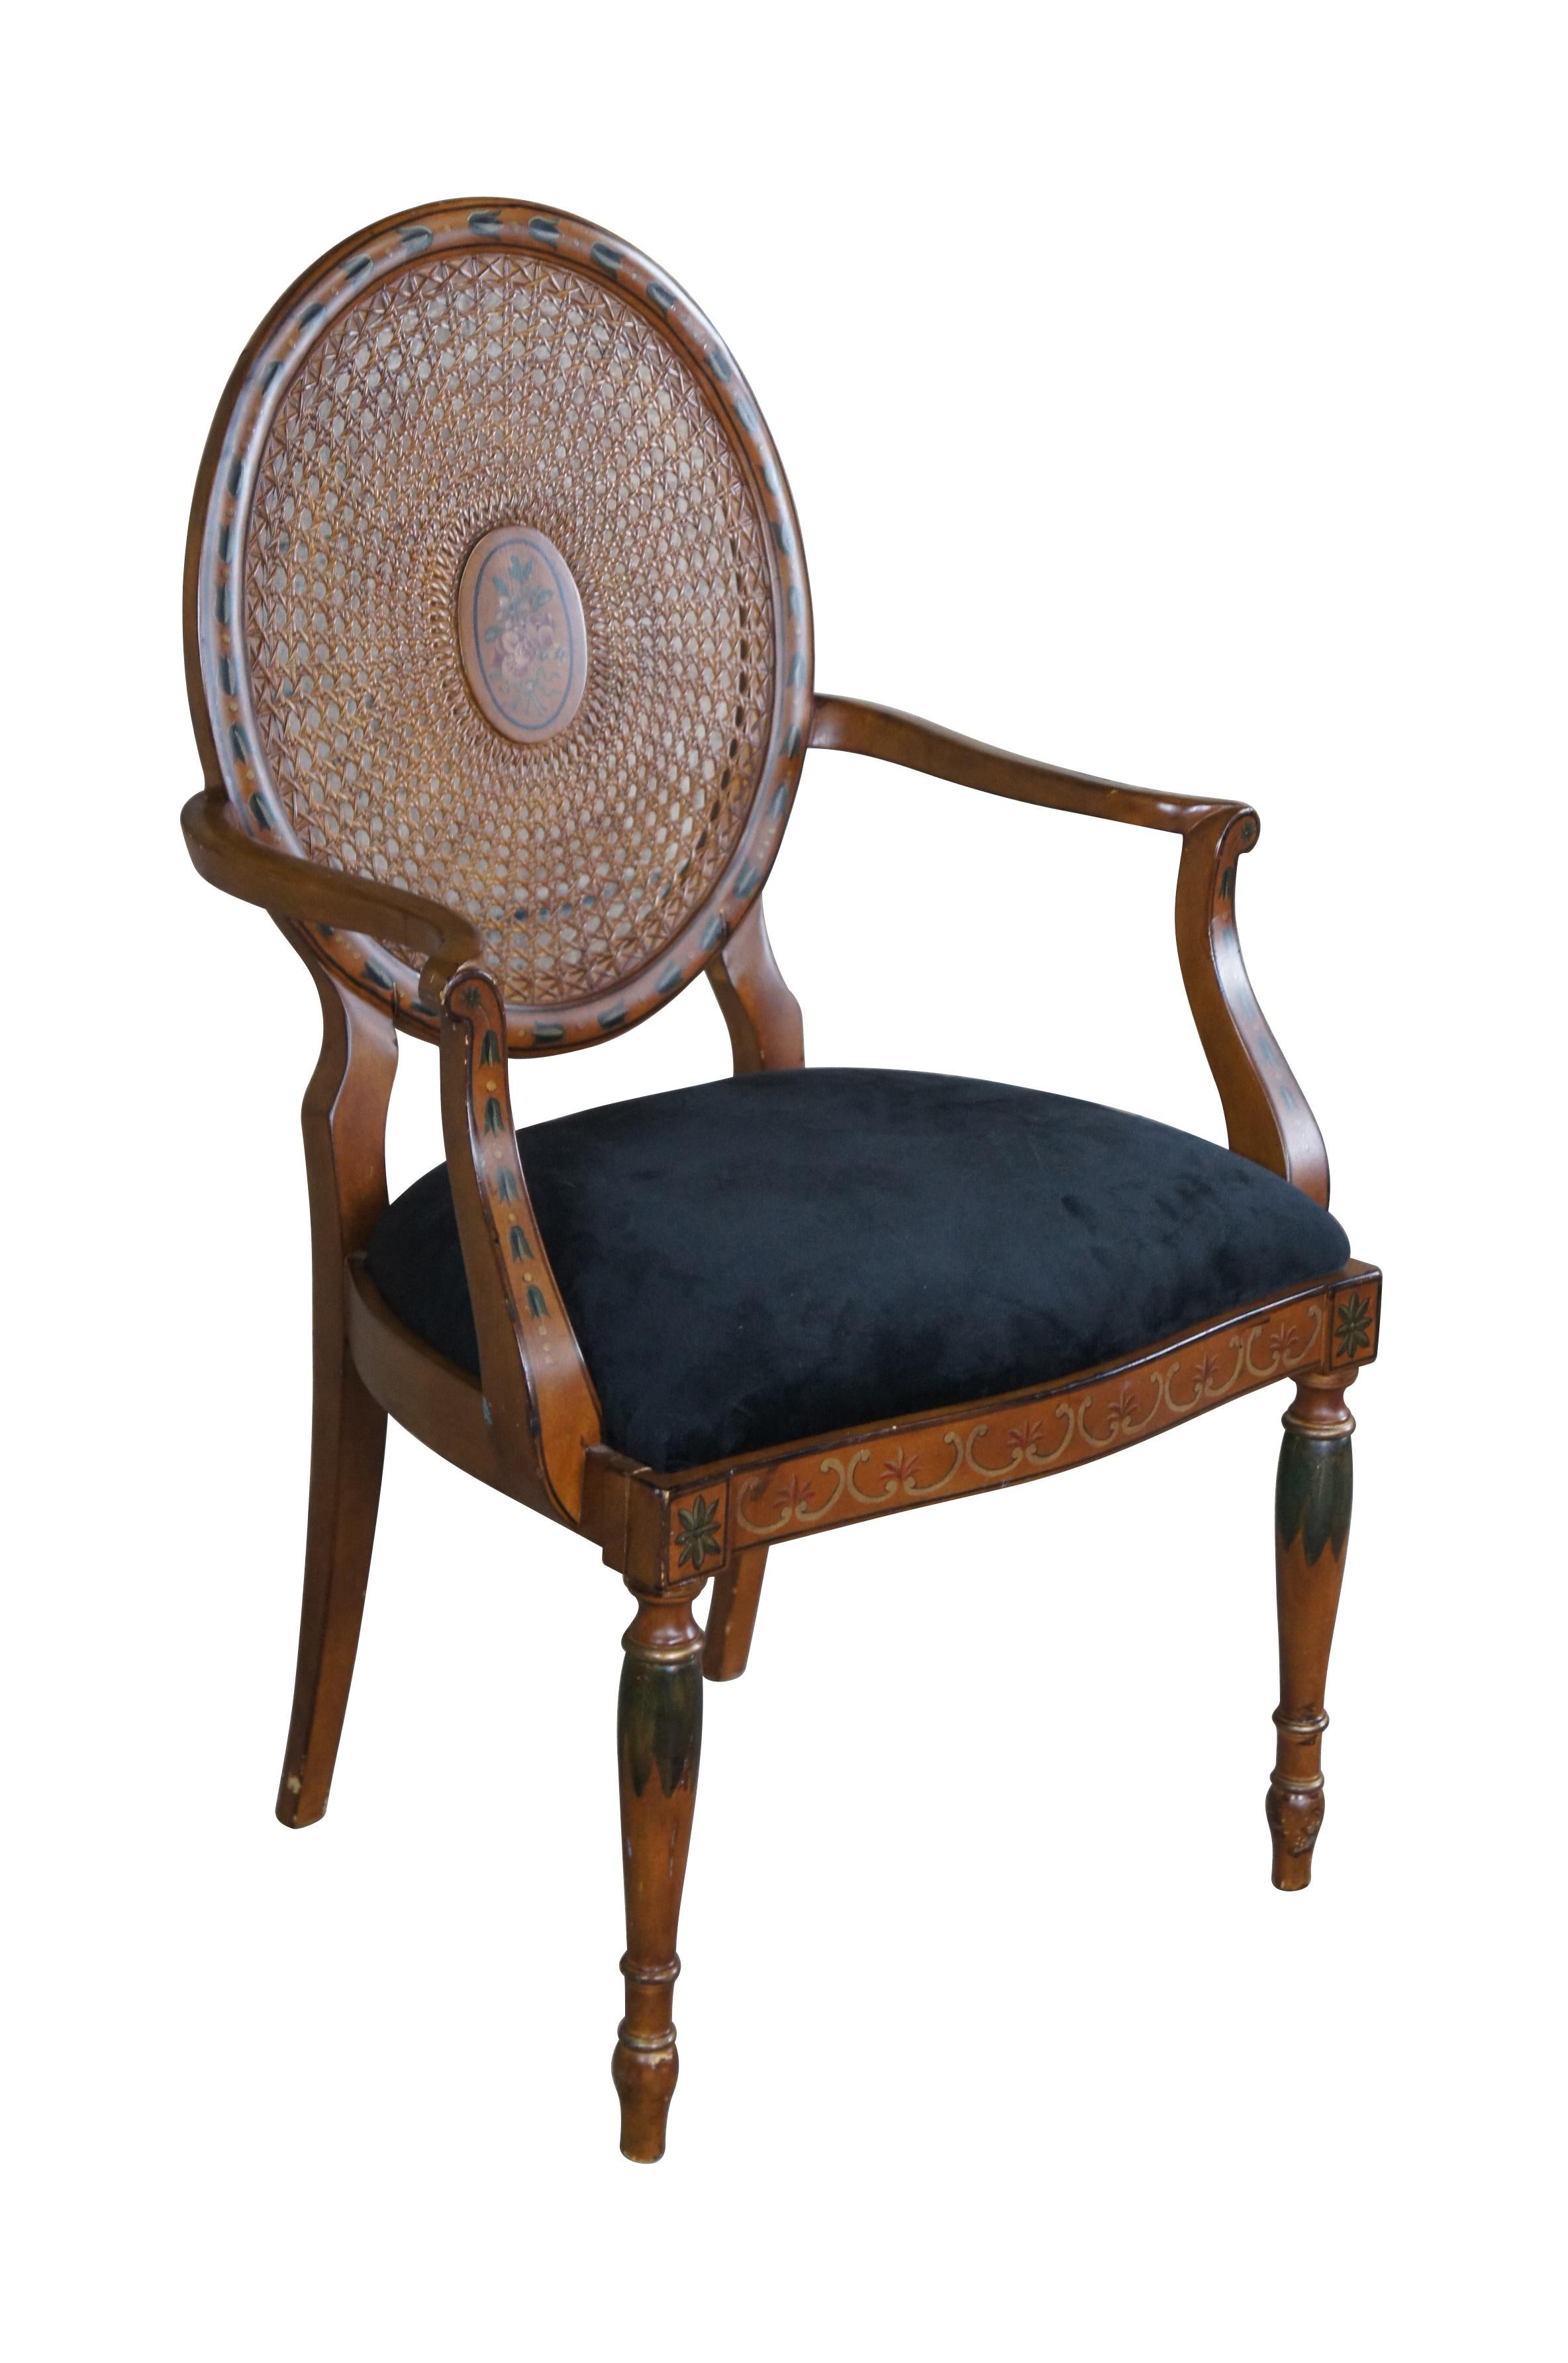 Vintage Pulaski Furniture Sessel. Der Sessel im Louis-XVI-Stil verfügt über eine geschwungene Rückenlehne, ausgestellte Arme und handbemalte Details. Hergestellt in Italien.

Abmessungen:
25,5